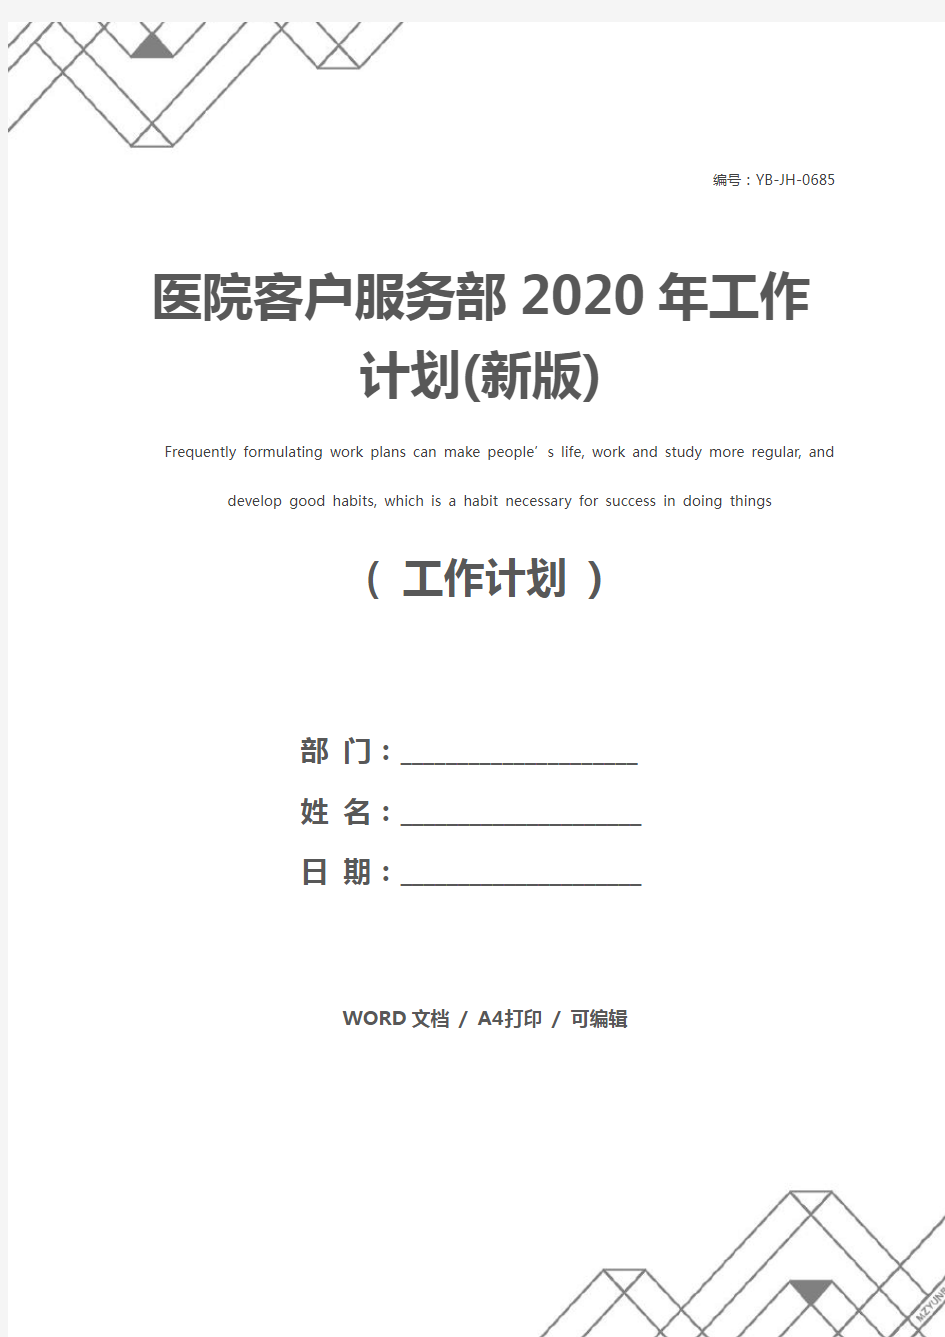 医院客户服务部2020年工作计划(新版)